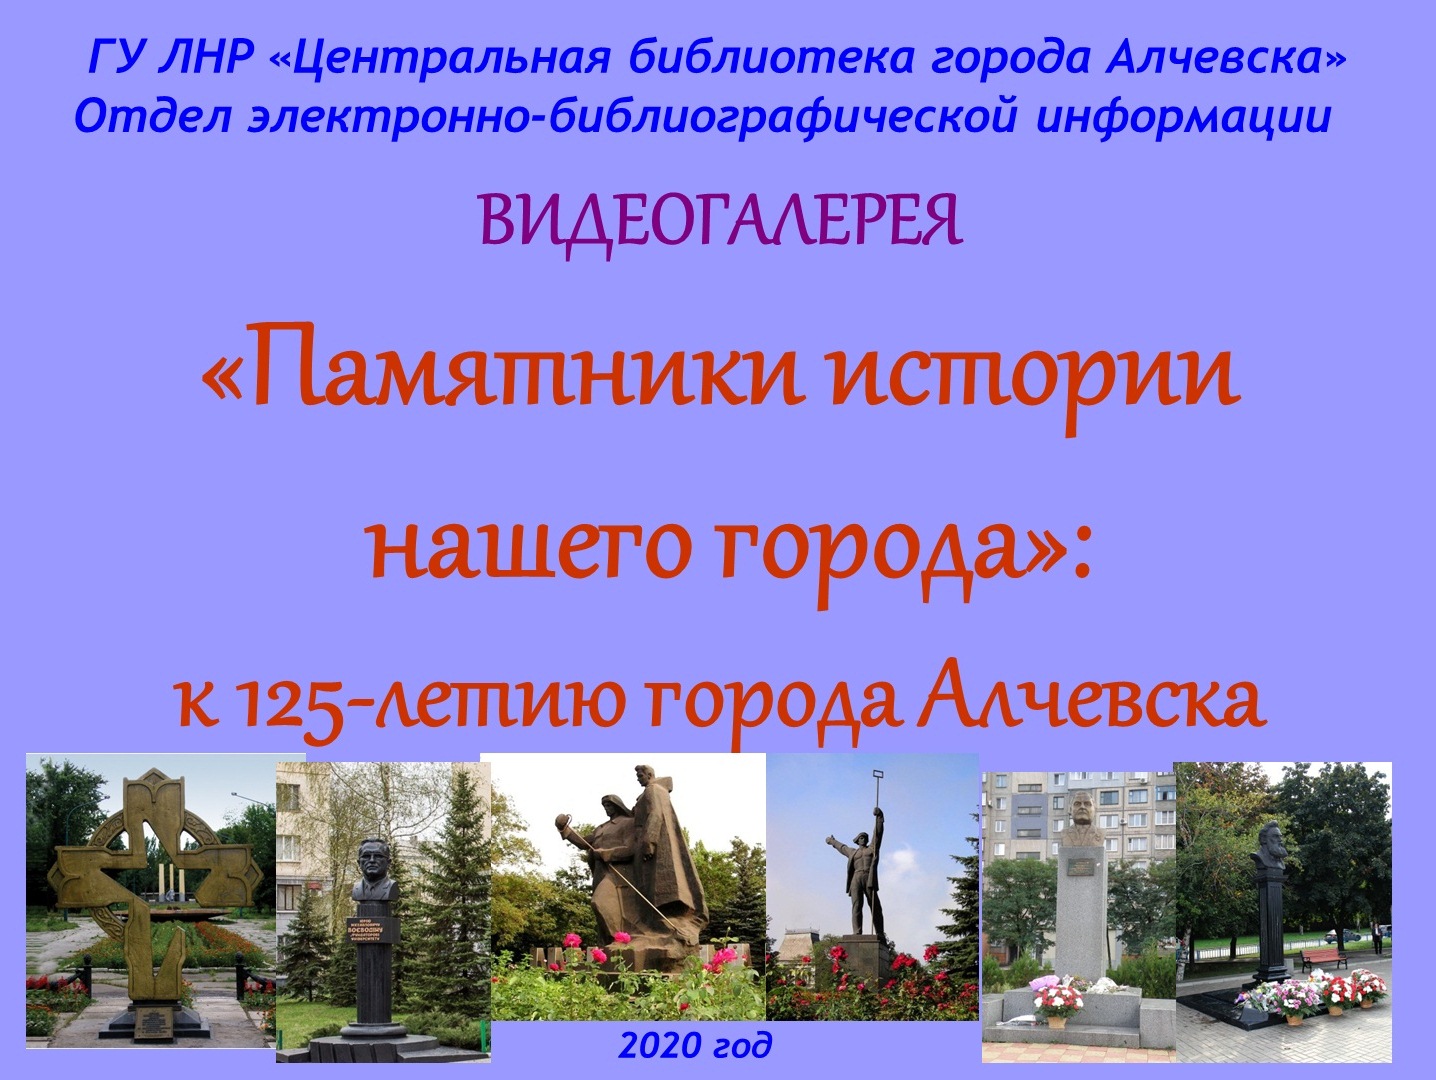 Видеогалерея «Памятники истории нашего города»: к 125-летию города Алчевска